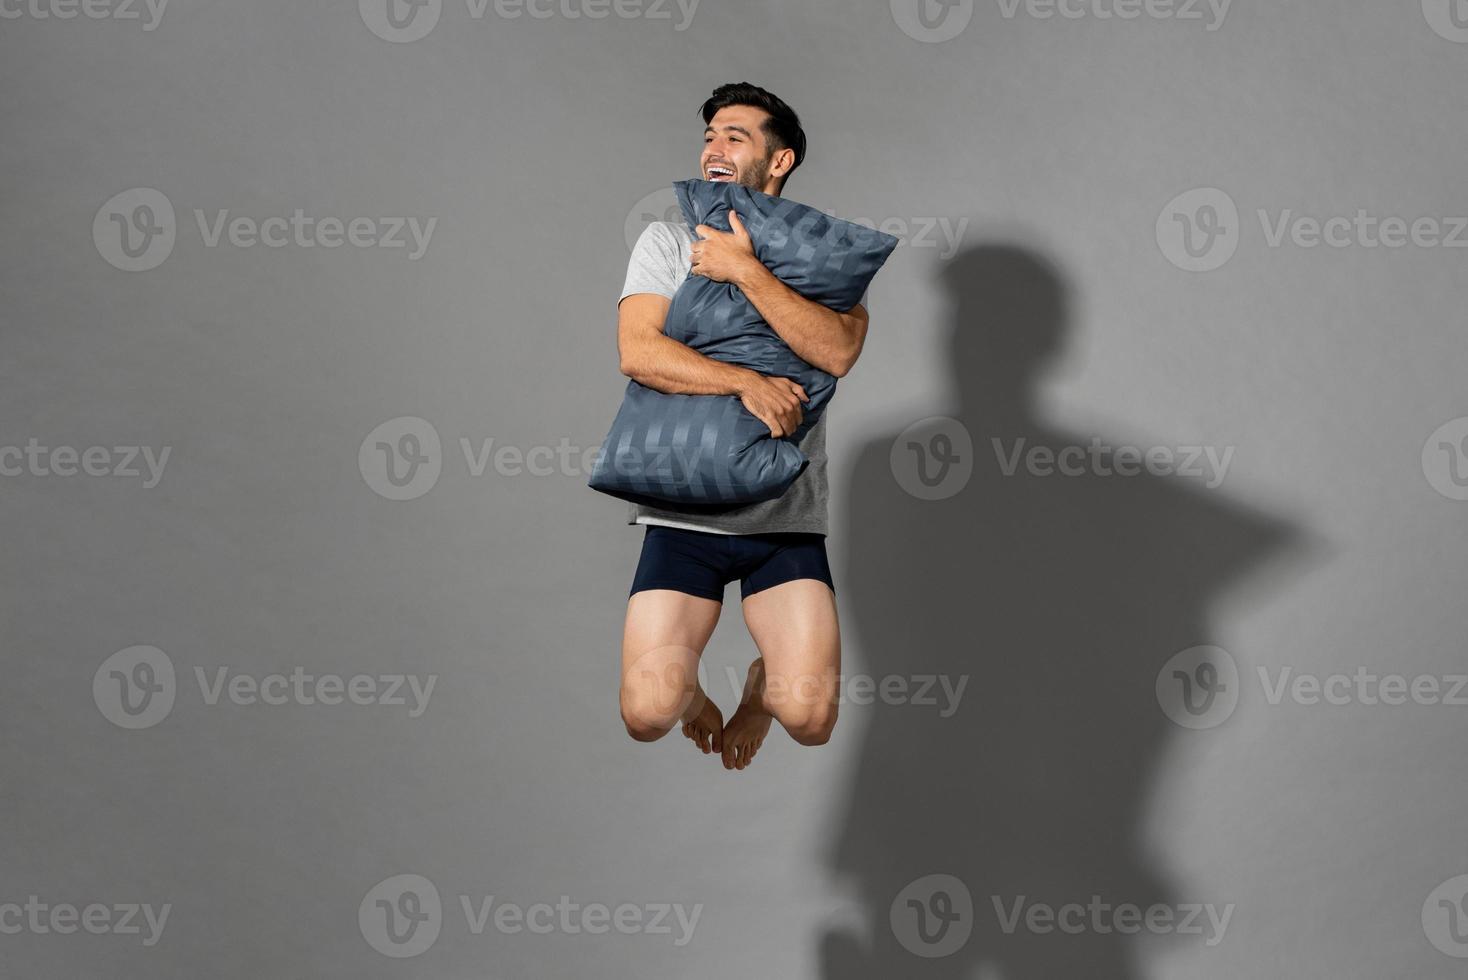 portret van een jonge, frisse, energieke man met nachtkleding die een kussen vasthoudt en in de lucht springt nadat hij 's ochtends wakker is geworden uit een goede nachtrust, studio-opname op een grijze geïsoleerde achtergrond foto